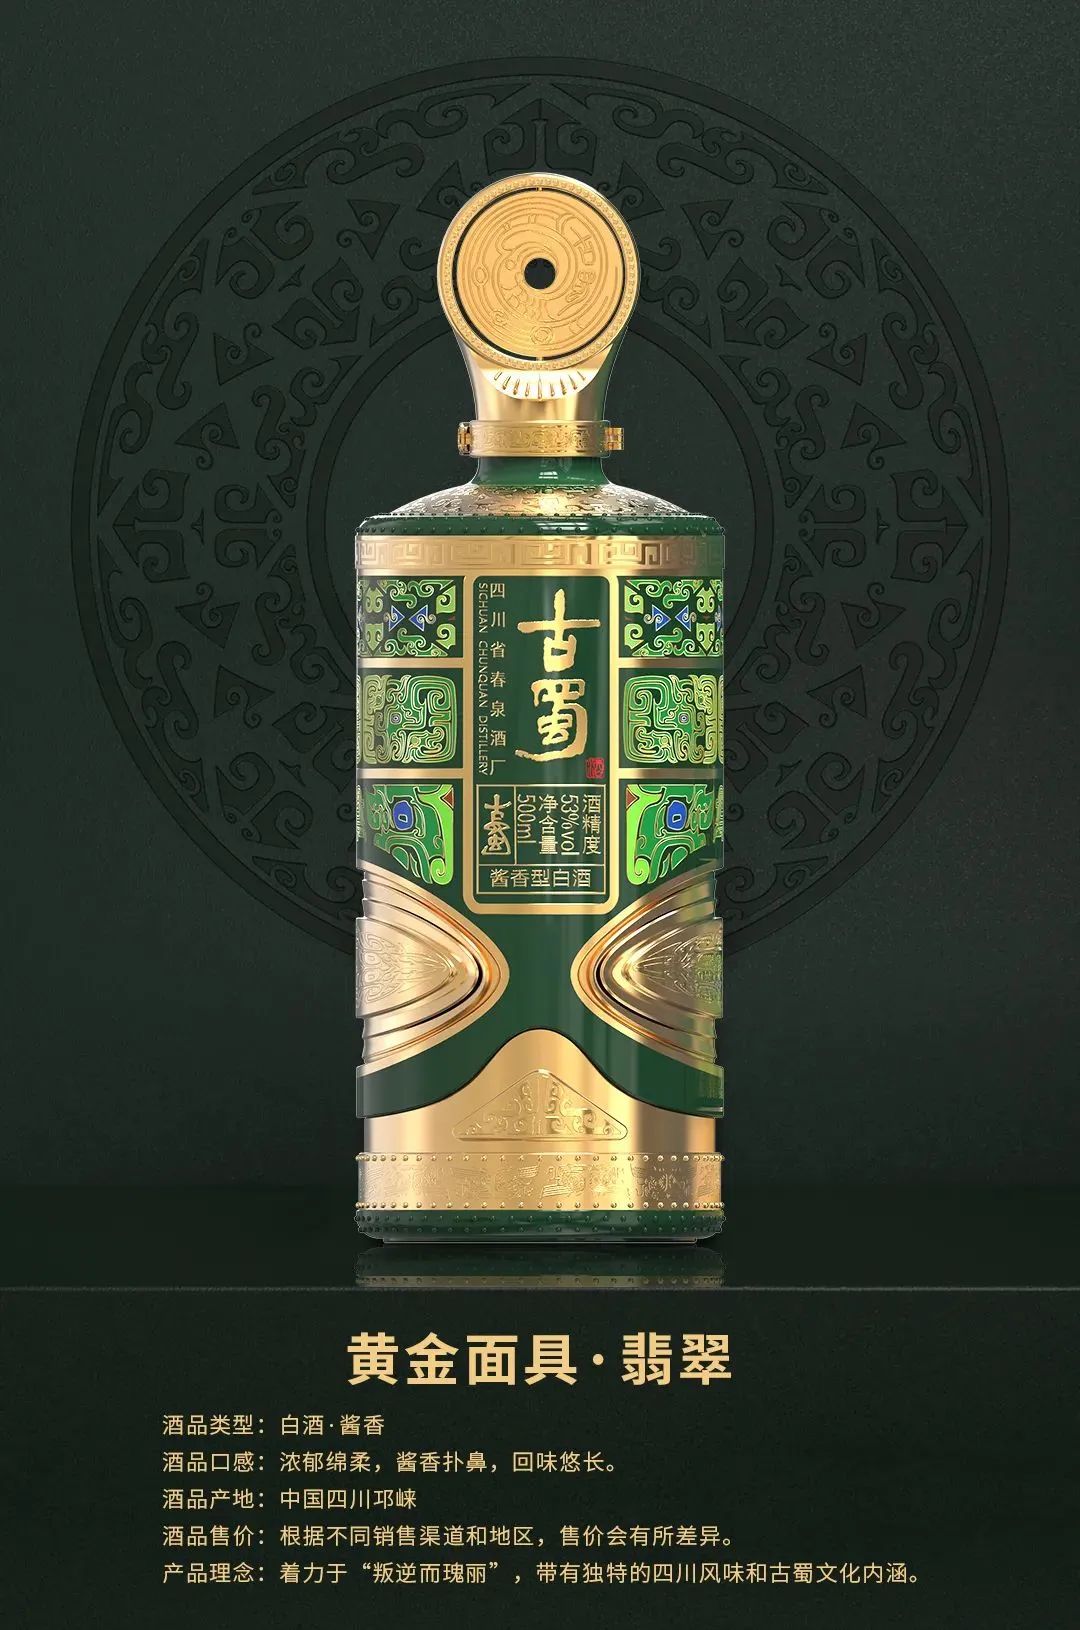 春泉集团古蜀酒在旧金山世界烈酒大赛上斩获最高奖项，古蜀实力展现中国 